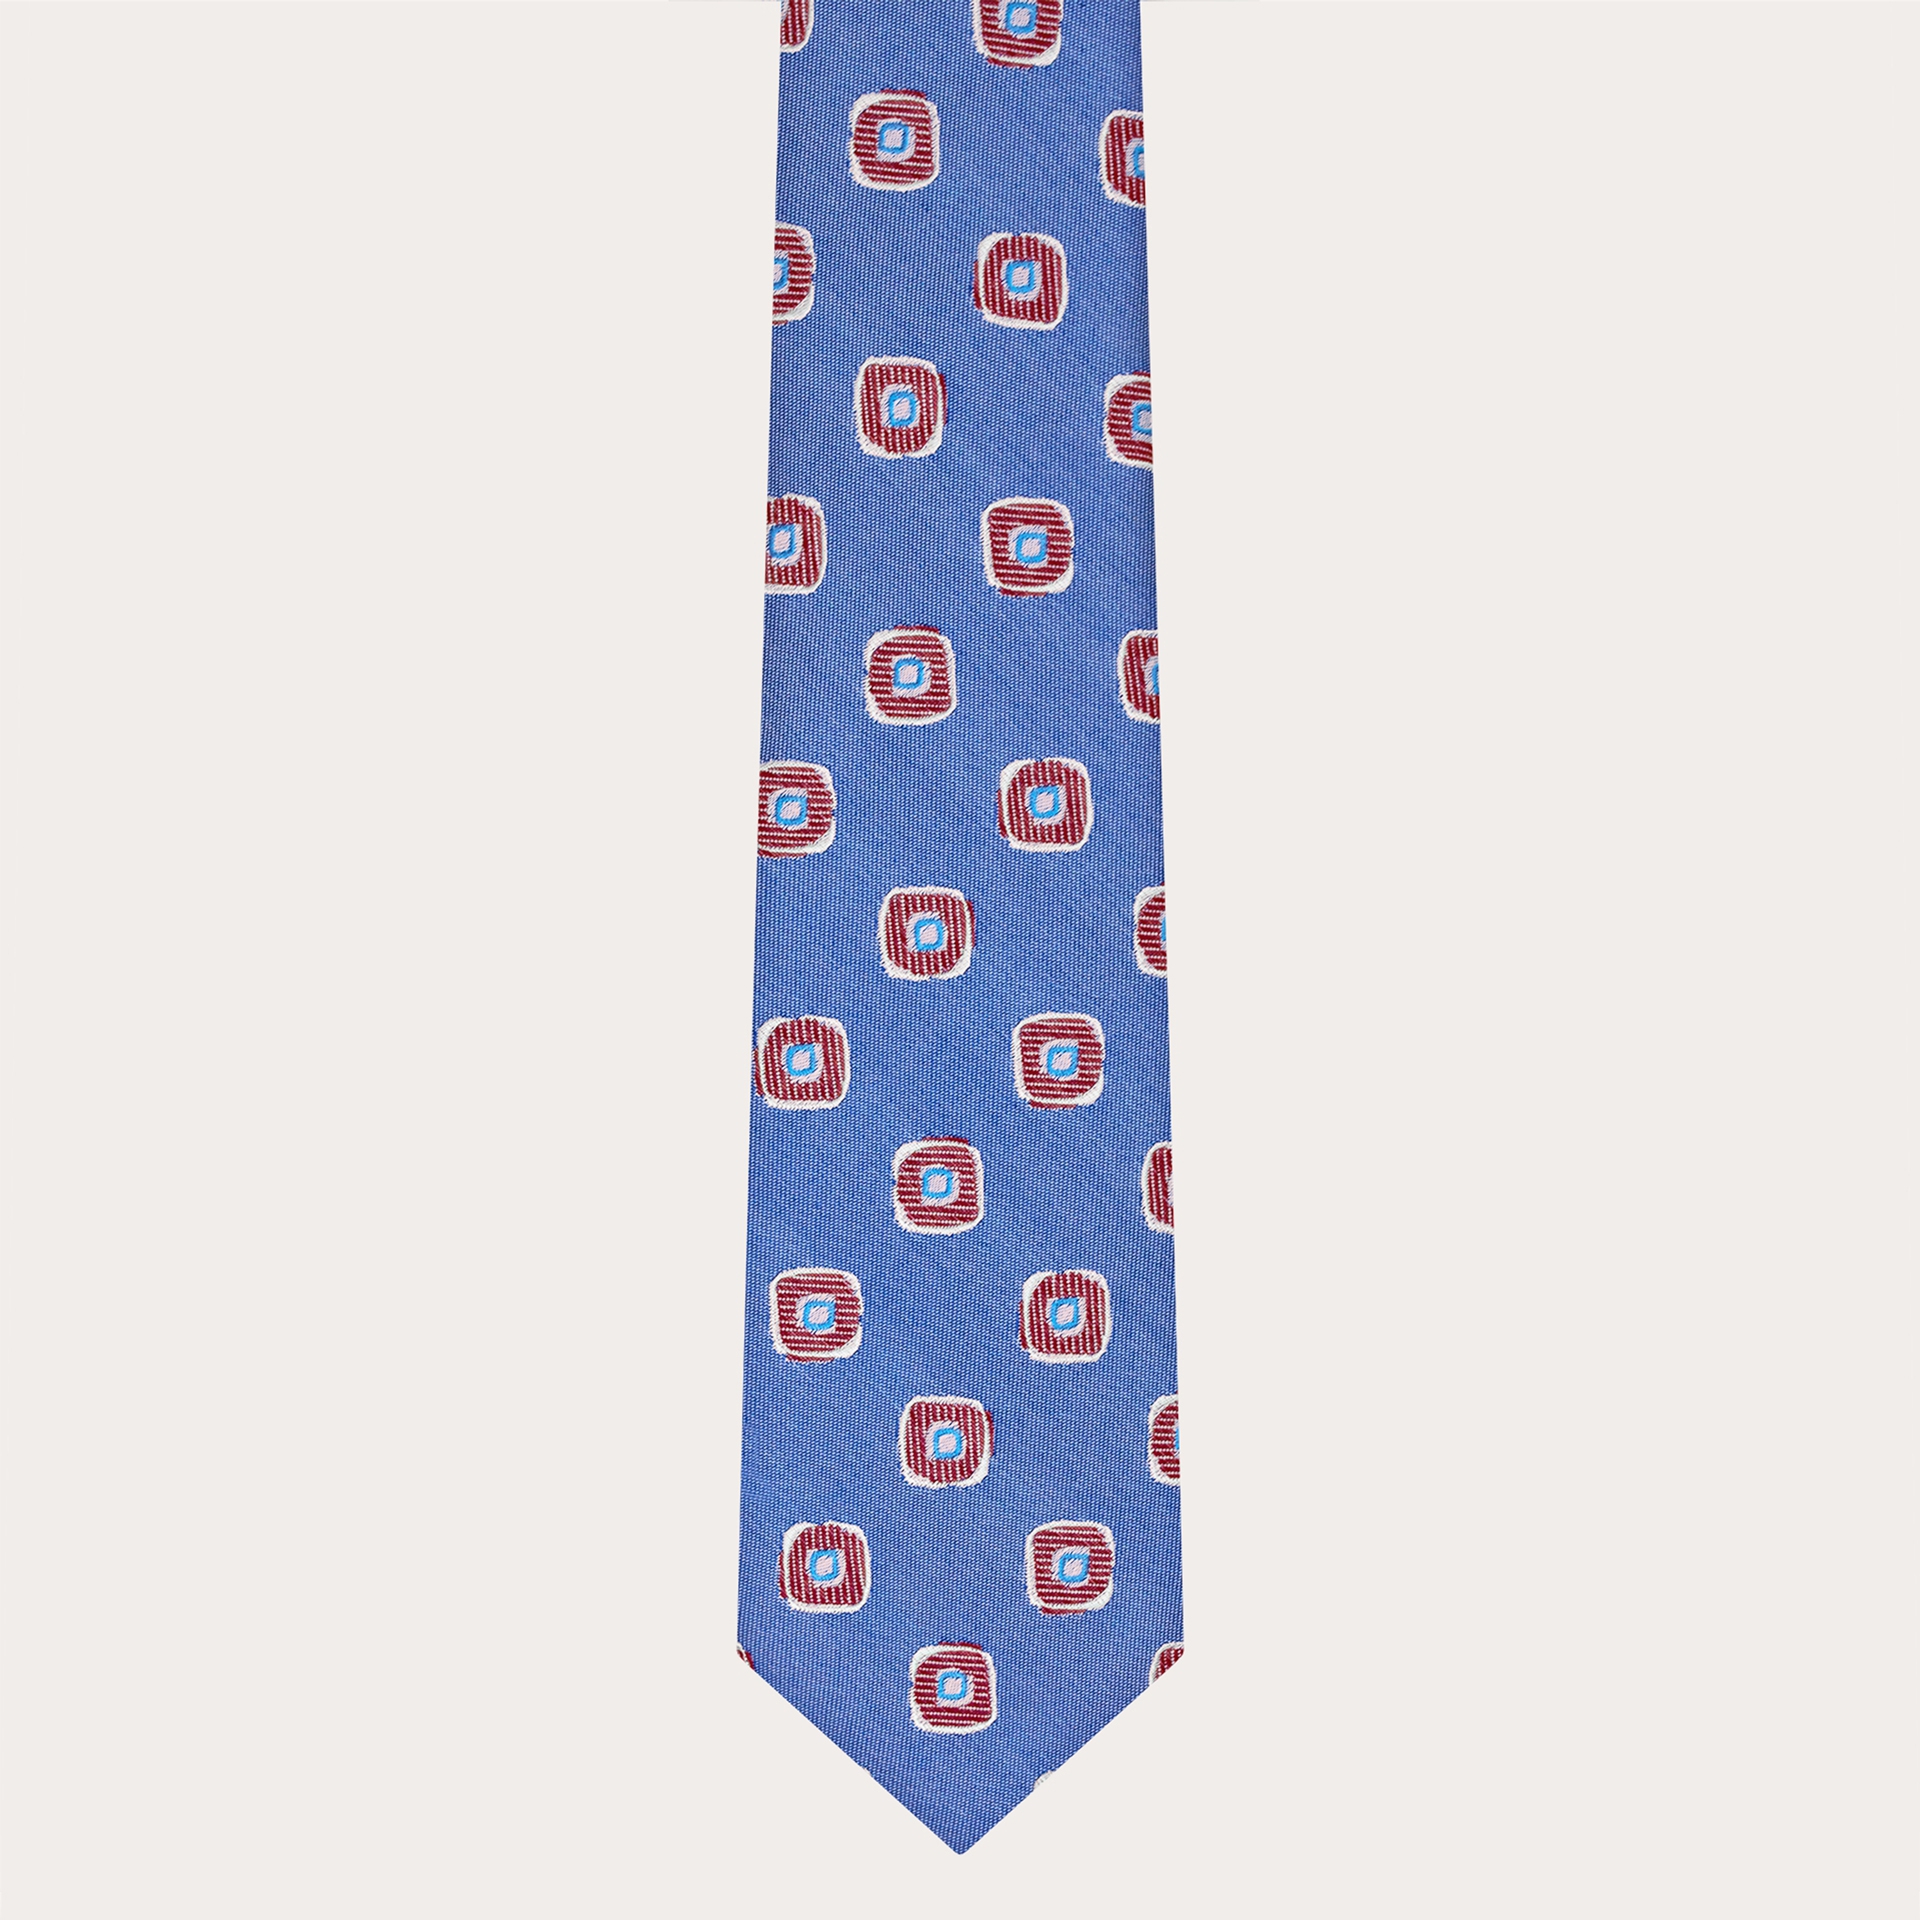 Cravate homme en soie jacquard, bleu avec motif géométrique rouge